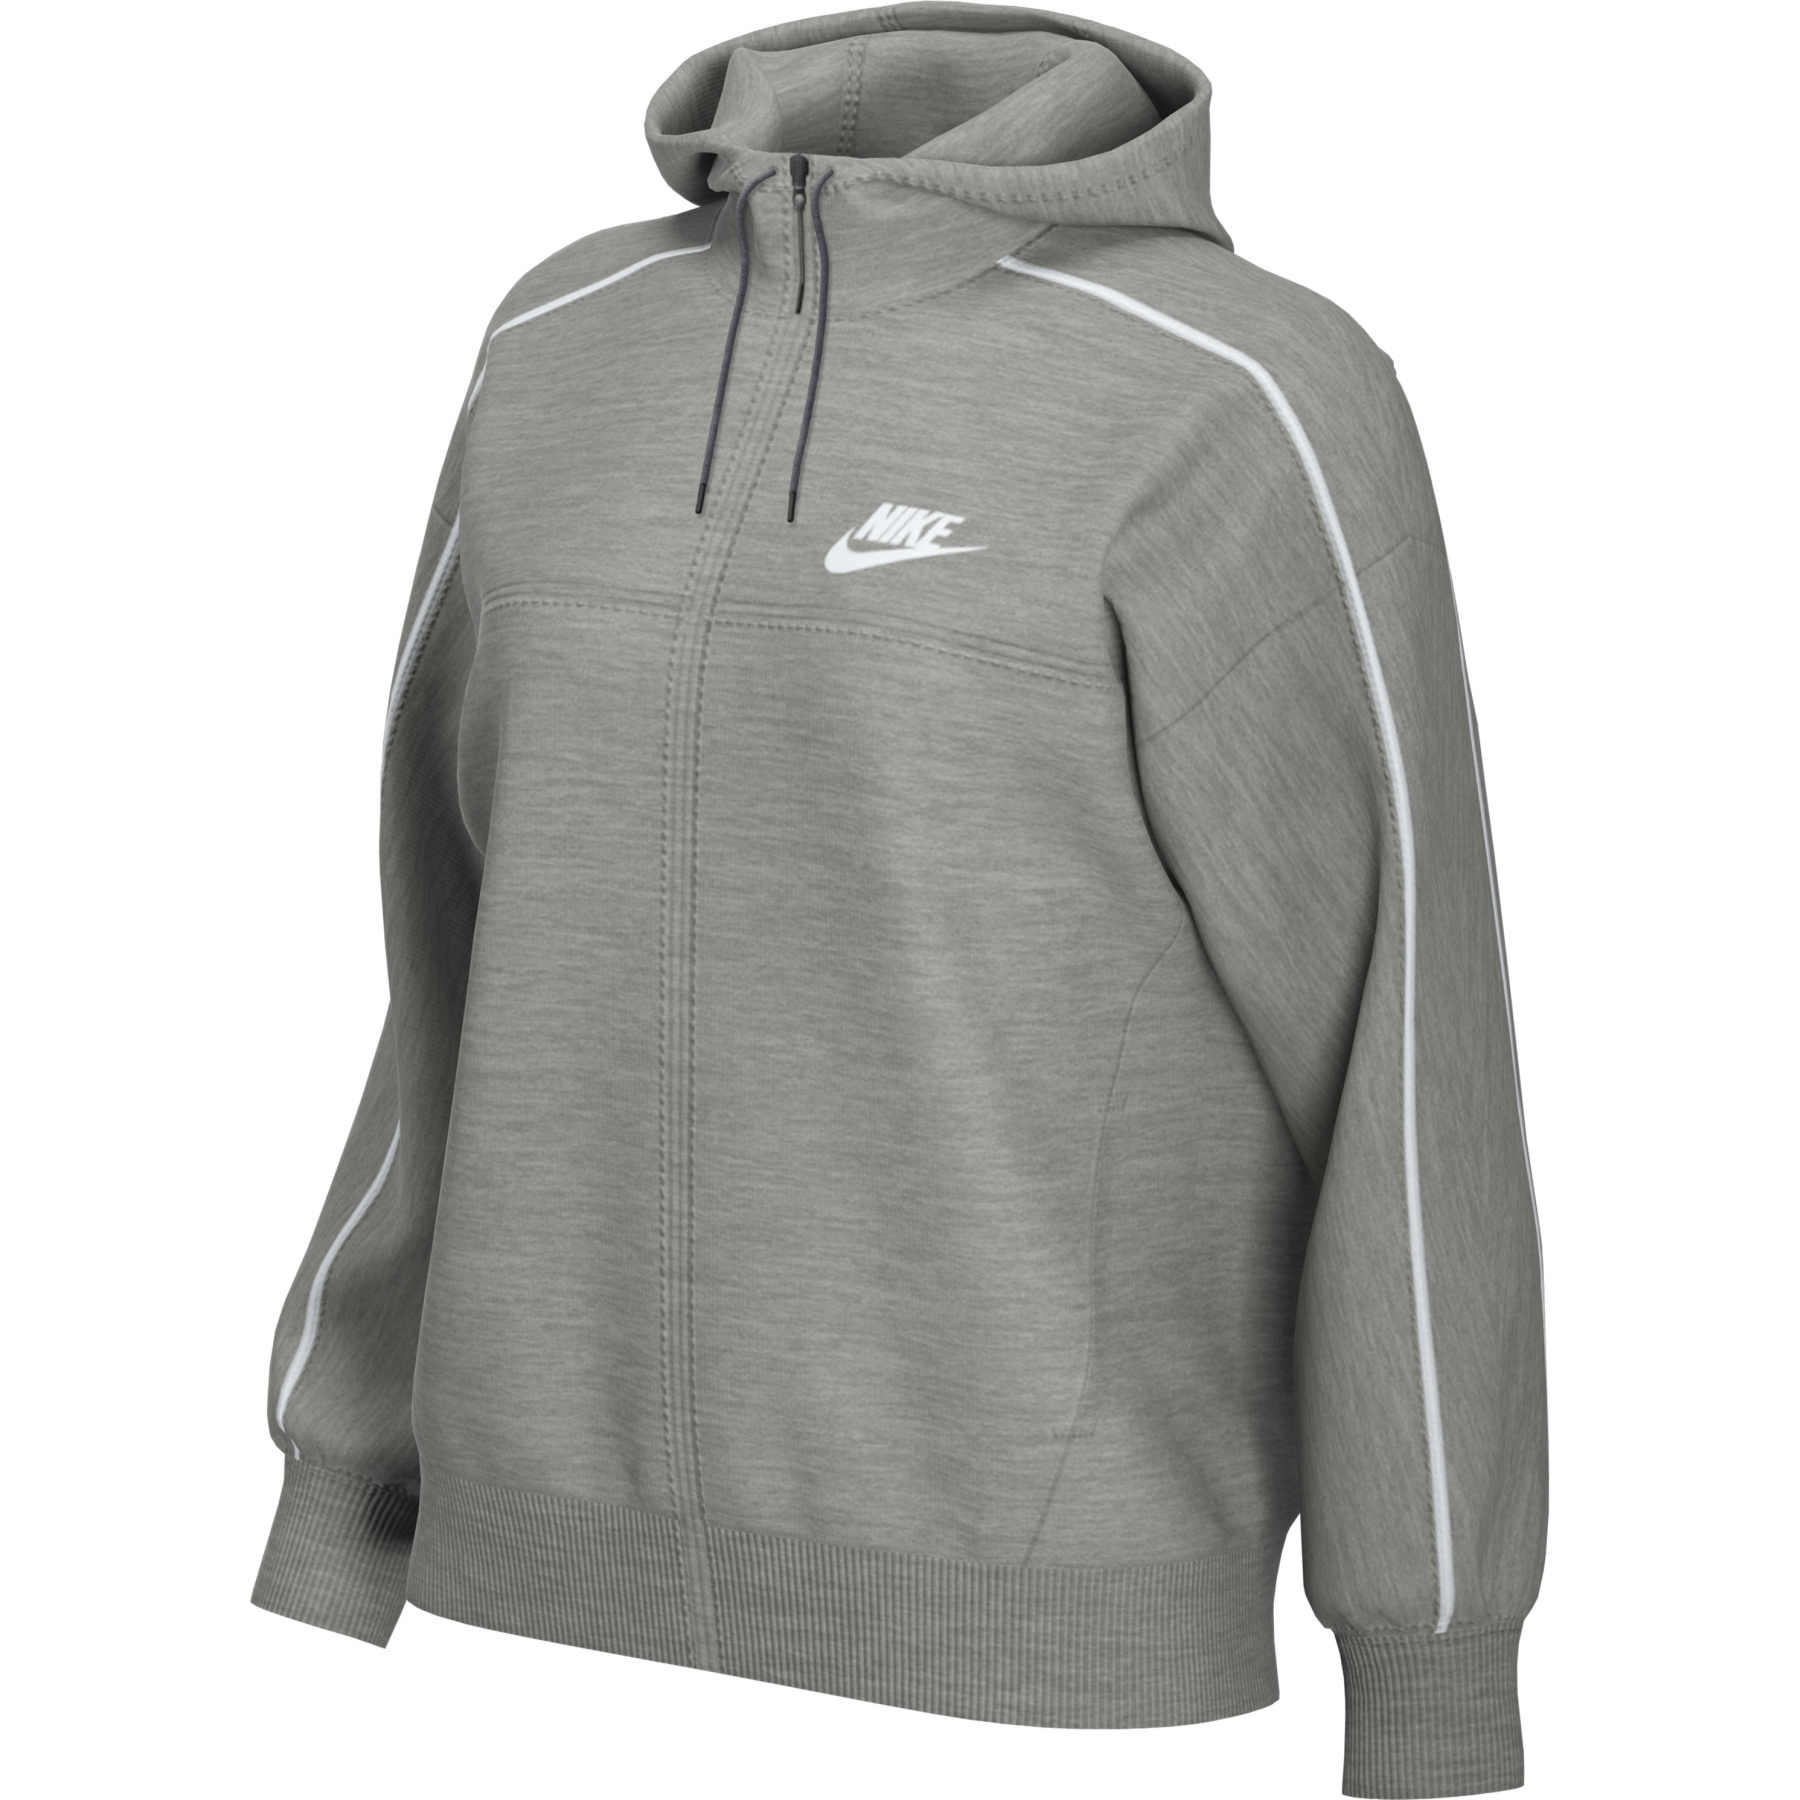 Produktbild von Nike Sportswear Millennium Kapuzenjacke Damen - dark grey heather/white CZ8338-063